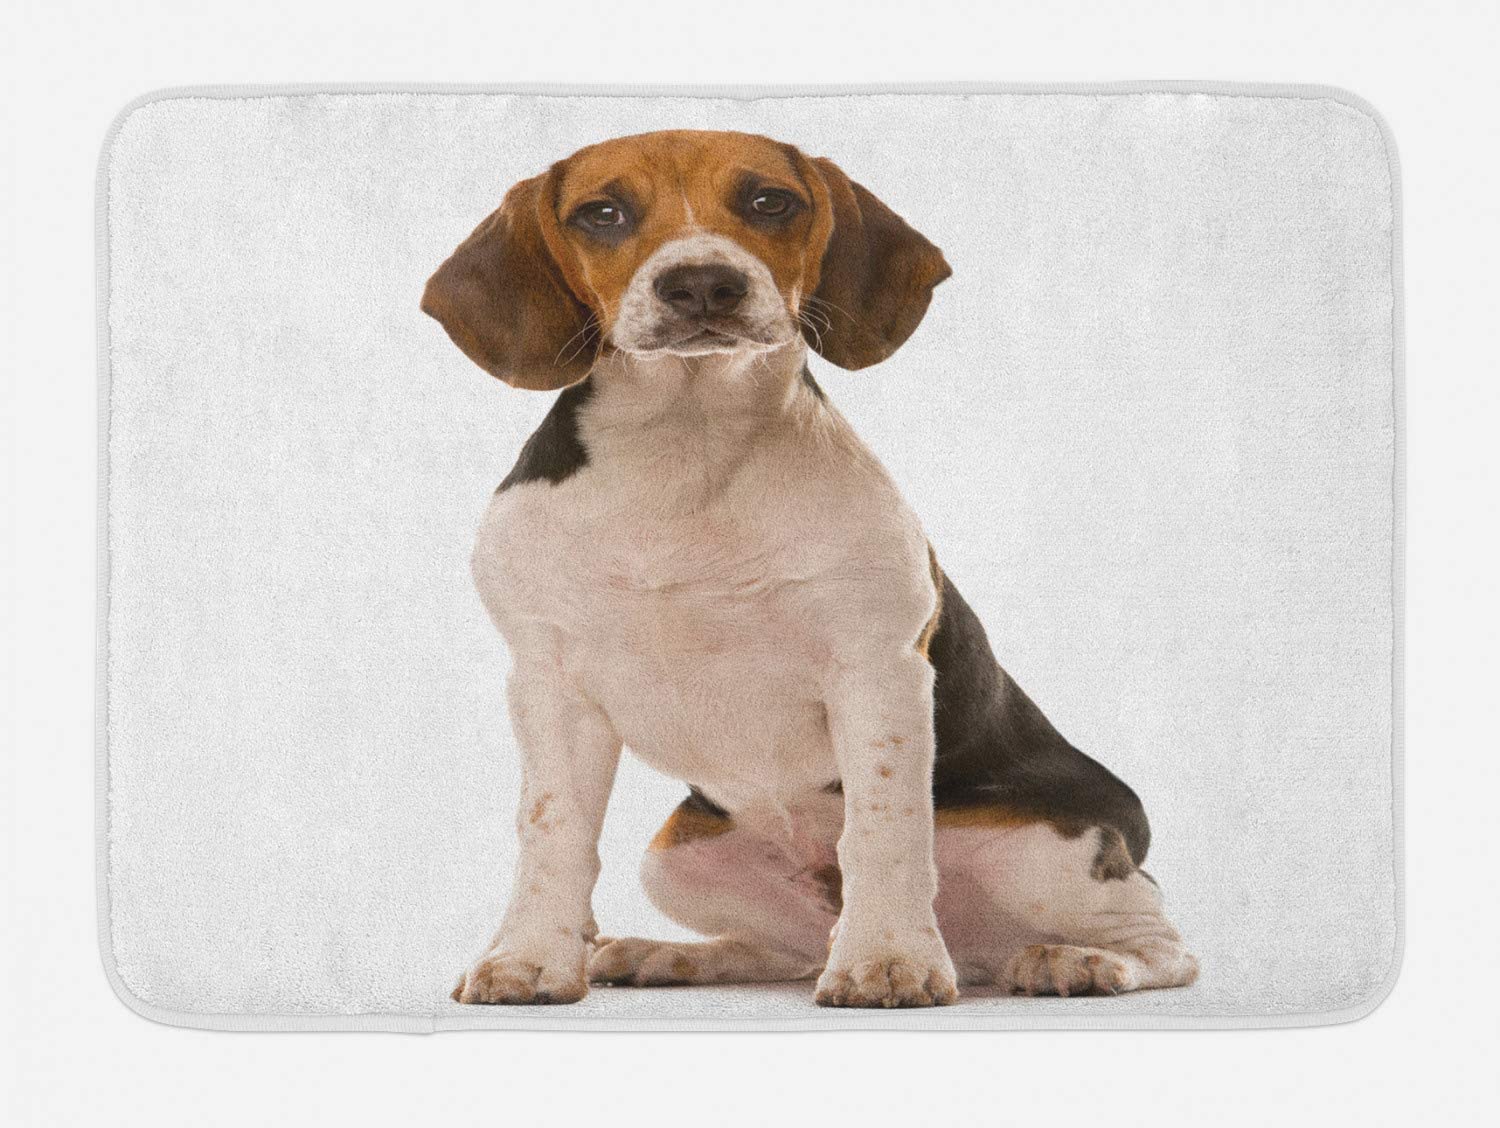  Colchoneta de baño de Beagle, fotografía de estudio para perros de raza pura Amante de los perros Foto de animal amigable, alfombrilla de baño de felpa con soporte antideslizante, Taupe cálido con car 